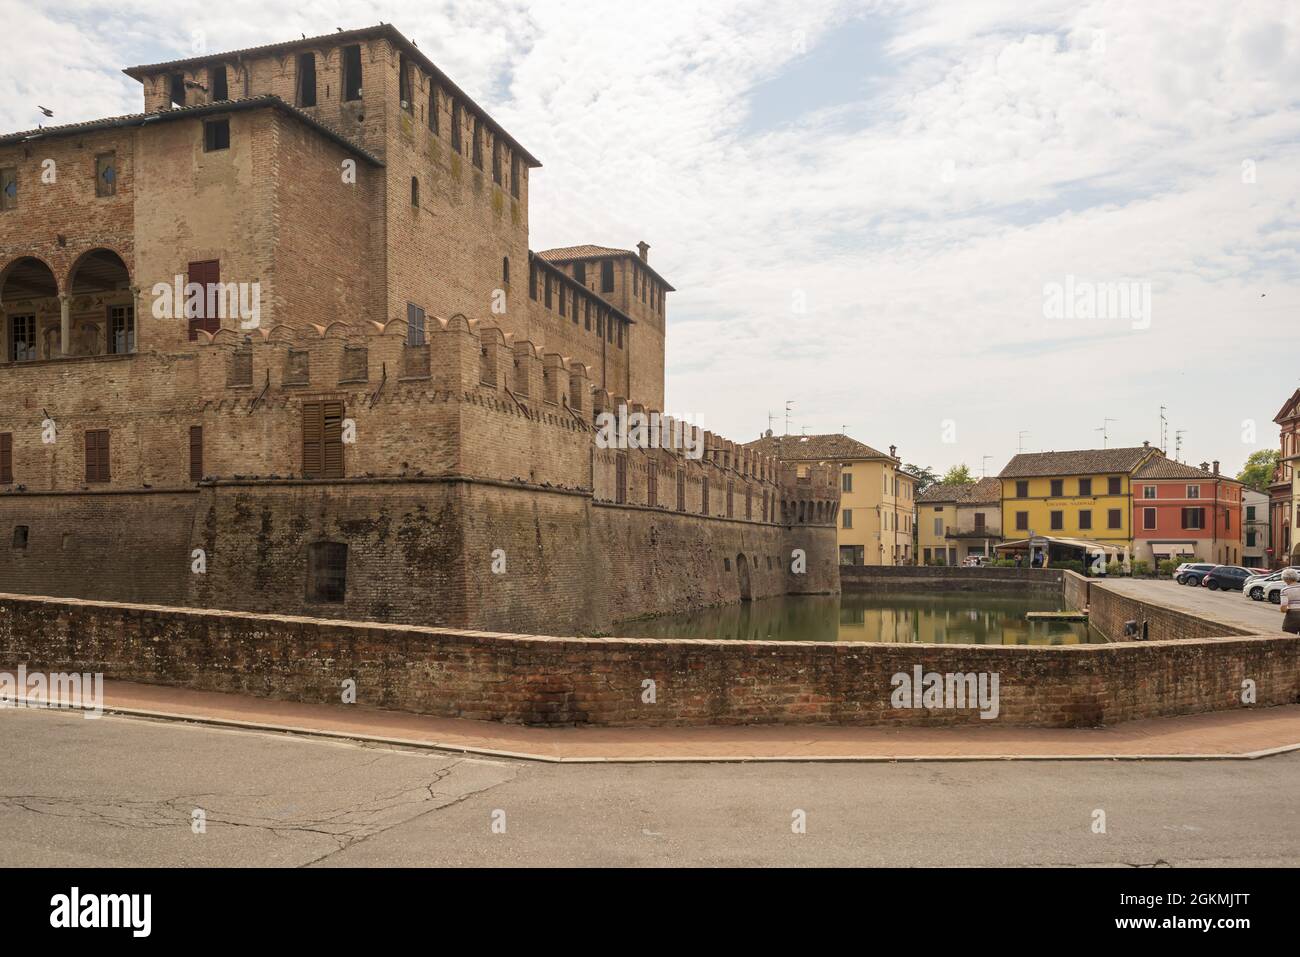 castello fontanellato italia parma 7 Stock Photo